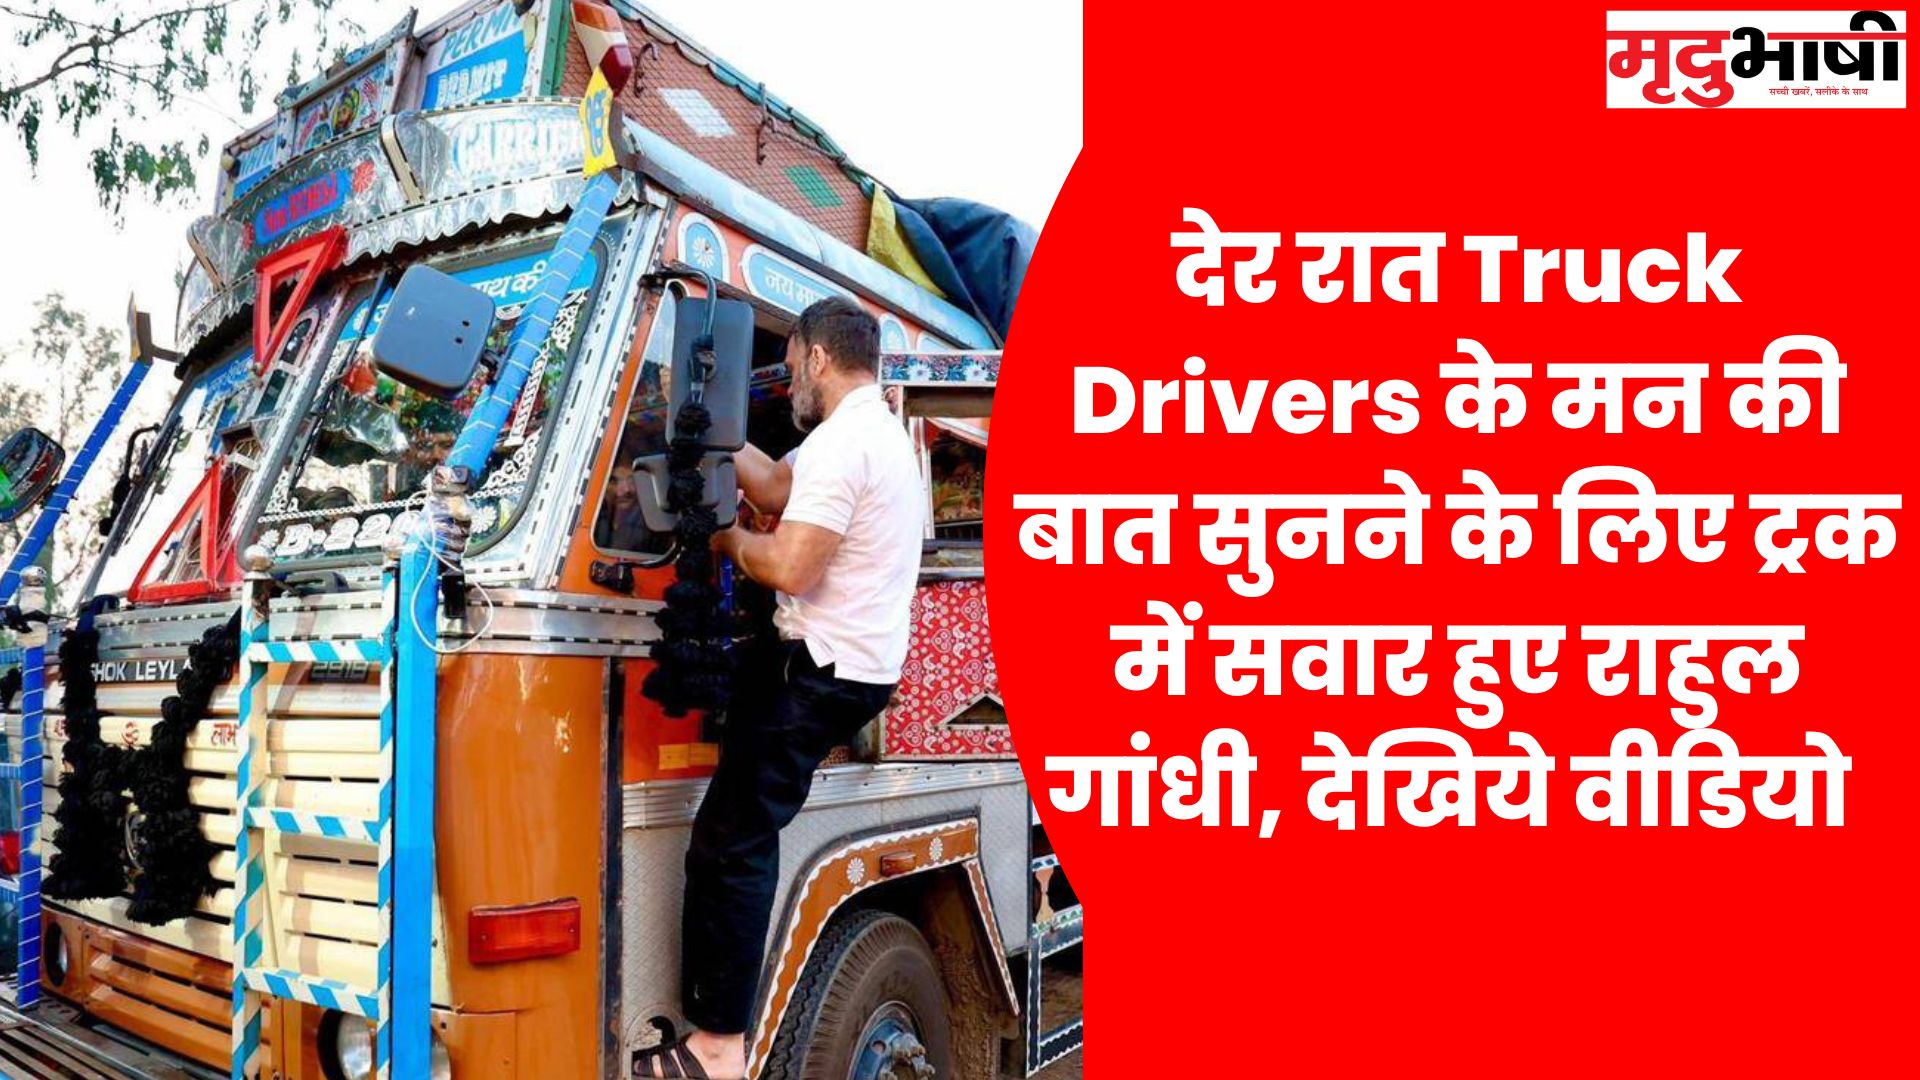 Rahul gandhi देर रात Truck Drivers के मन की बात सुनने के लिए ट्रक में सवार हुए राहुल गांधी, देखिये वीडियो